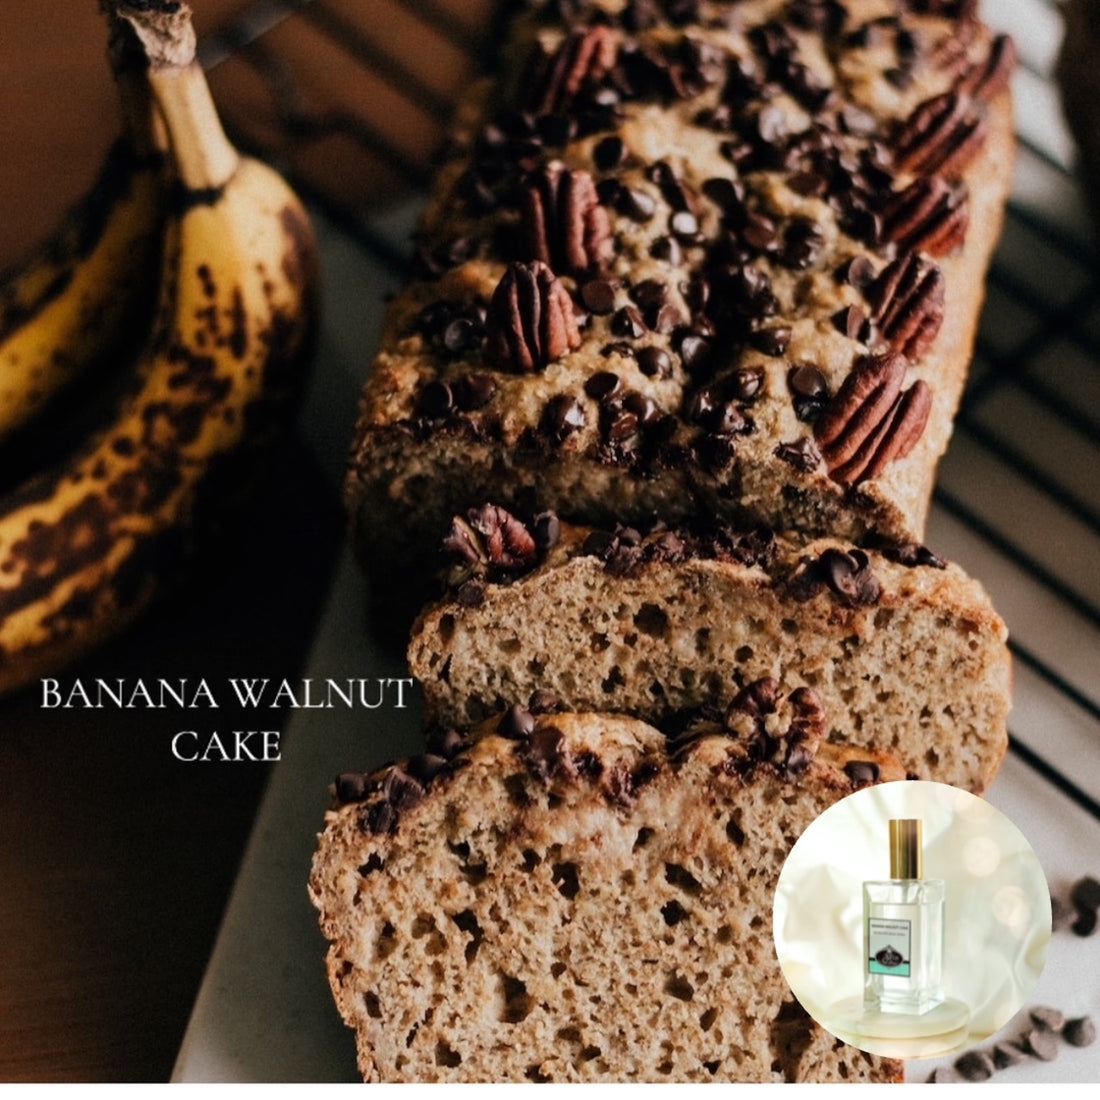 BANANA WALNUT CAKE - Room and Body Spray, Buy 2 get 1 FREE